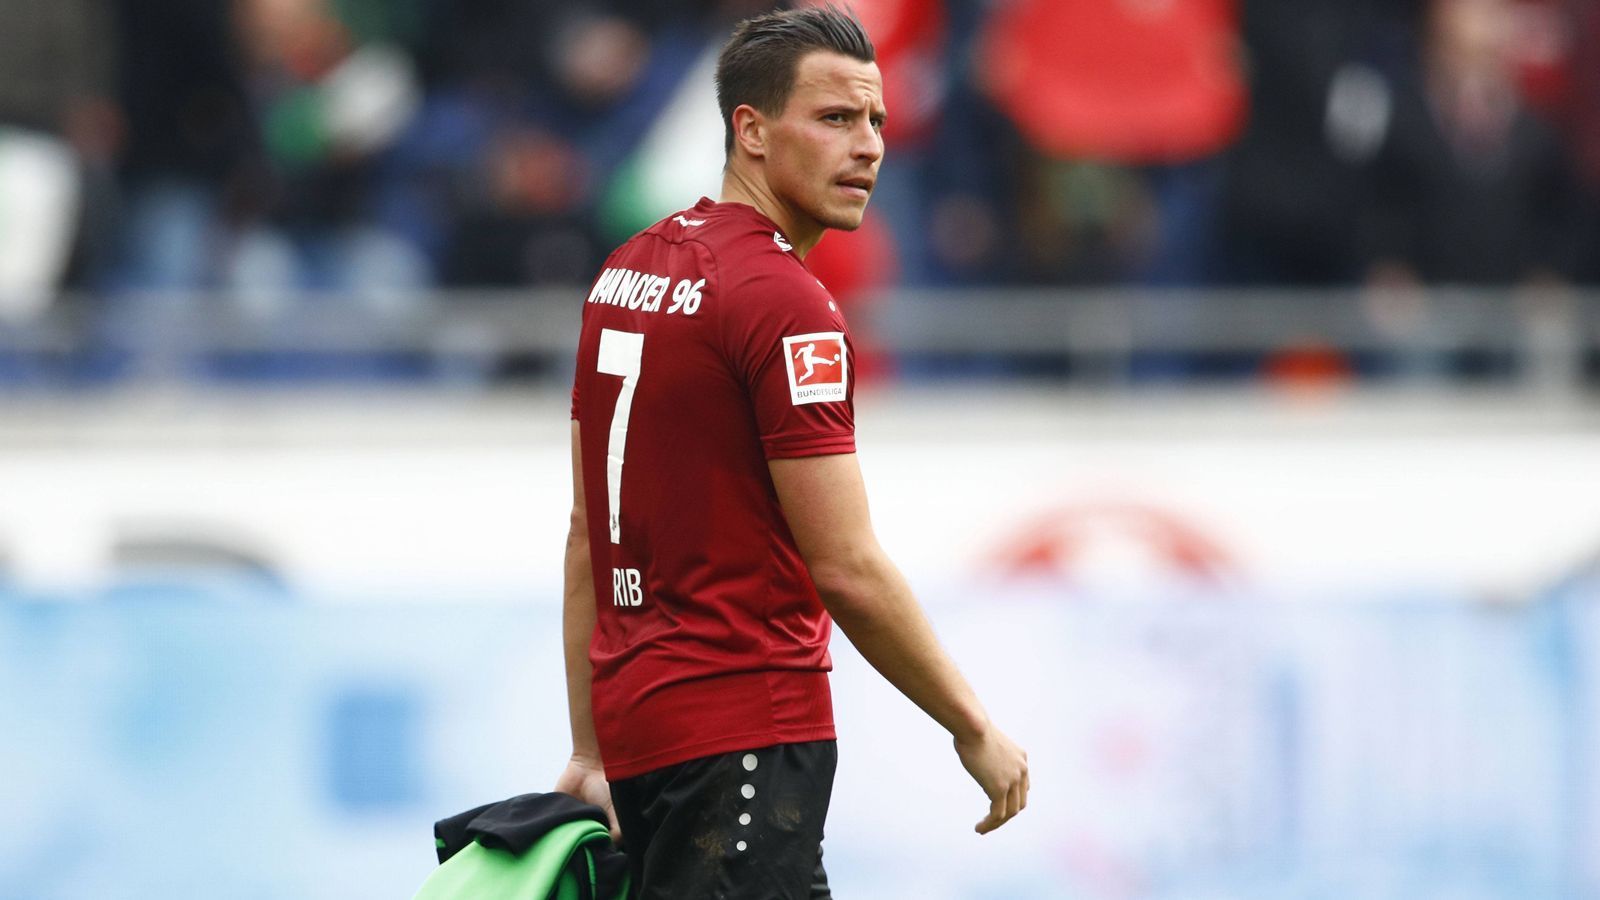 
                <strong>Edgar Prib</strong><br>
                Der 29-jährige Edgar Prib ist einer jener Spieler in Hannover, die sportlich am wenigsten für den Abstieg können. Denn der Mittelfeldmann fehlte fast die gesamte Saison über wegen eines Kreuzbandrisses. Deshalb stehen für Prib bislang auch nur drei Bundesliga-Einsätze in der Saison 2018/19 zu Buche. Pribs Vertrag läuft Ende Juni aus, Hannover will aber angeblich mit ihm verlängern.
              